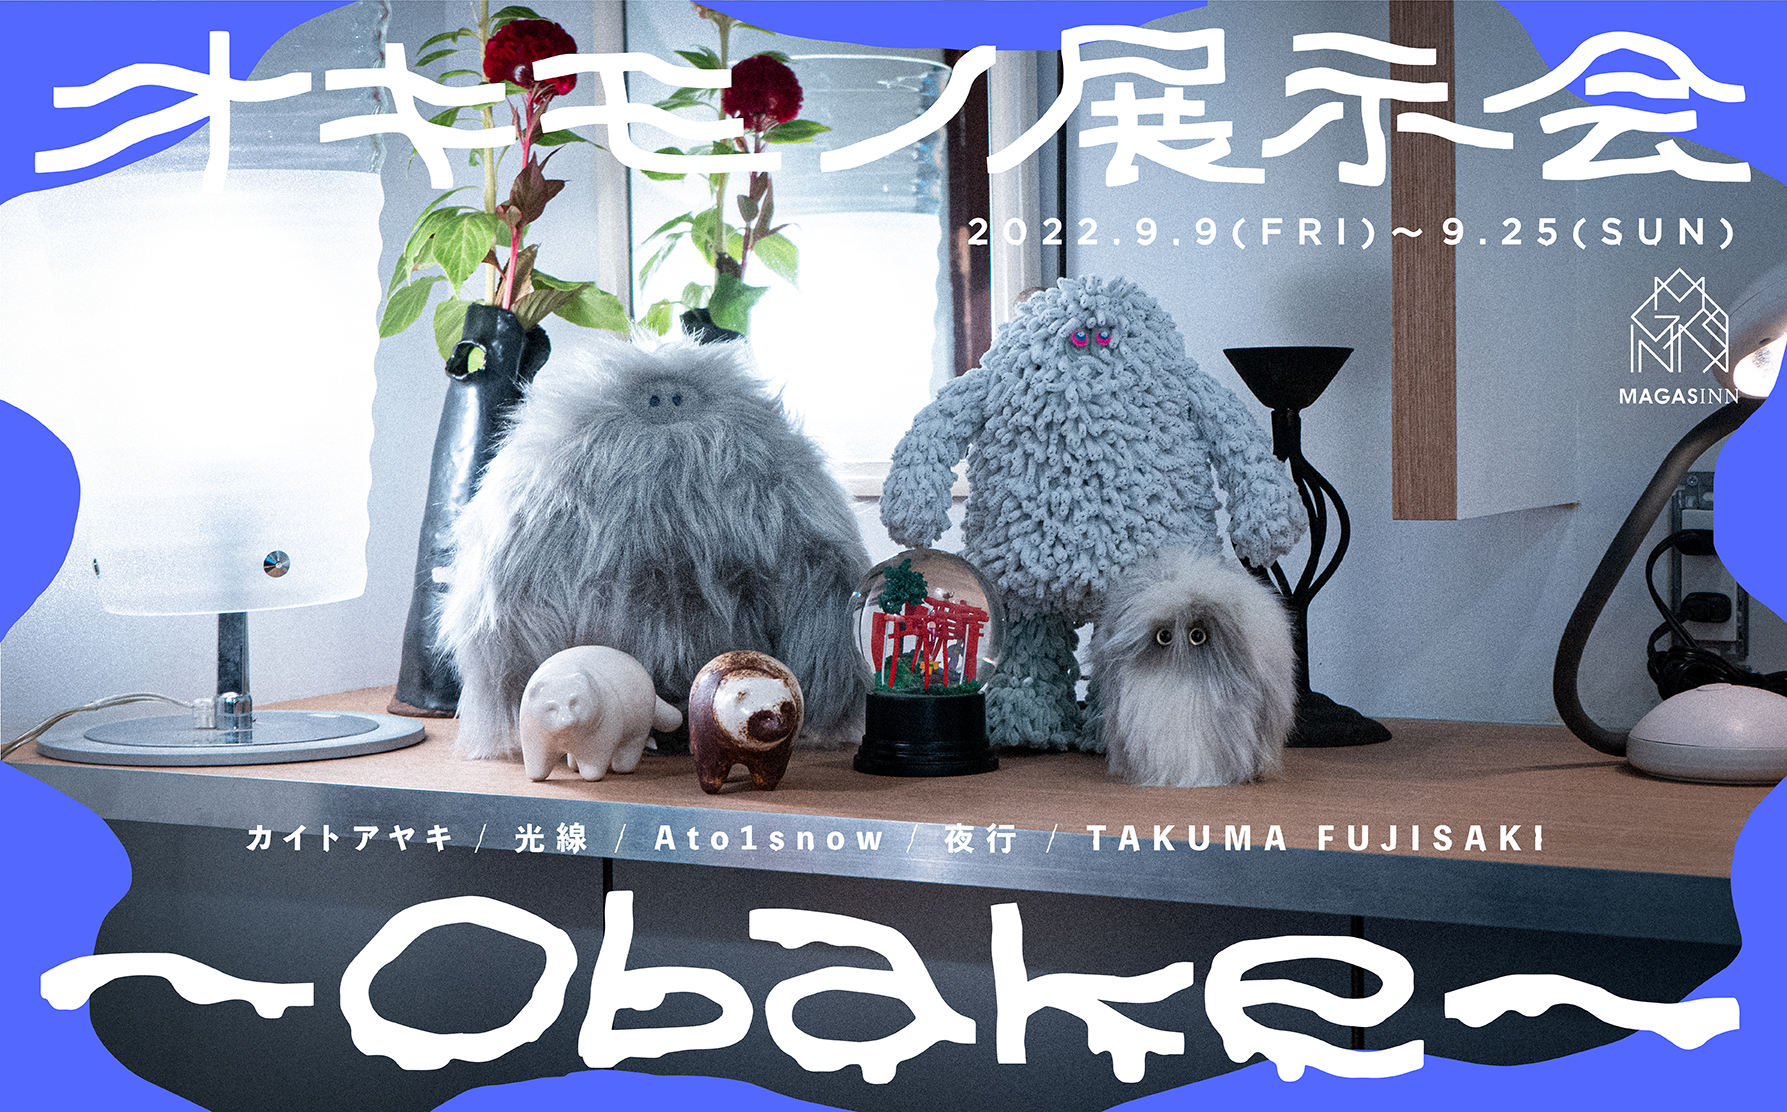 オキモノ展示-obake-を開催します。